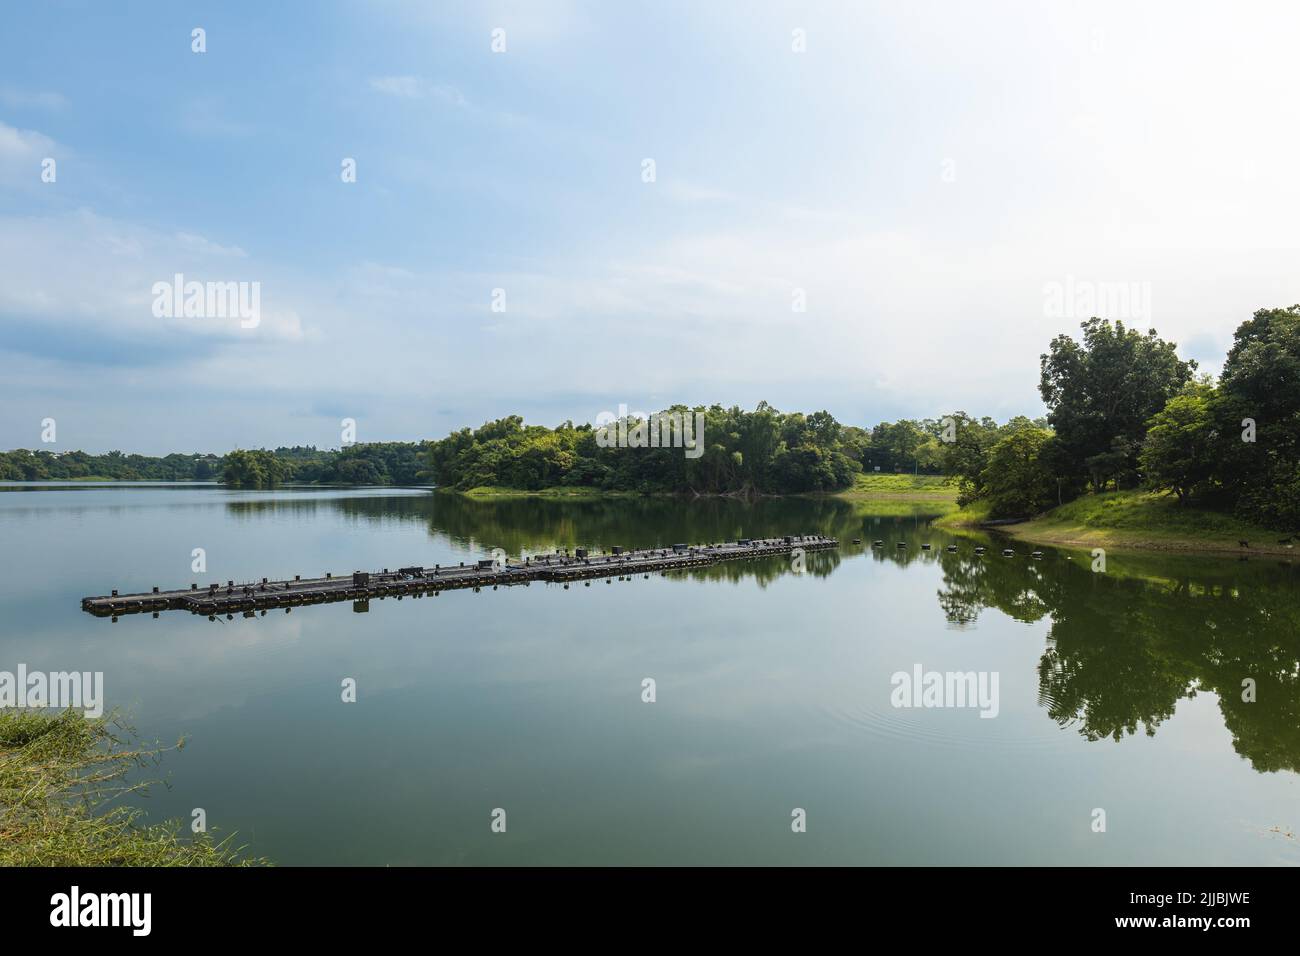 scenery of Lantan, aka Orchid lake, in chiayi, taiwan Stock Photo